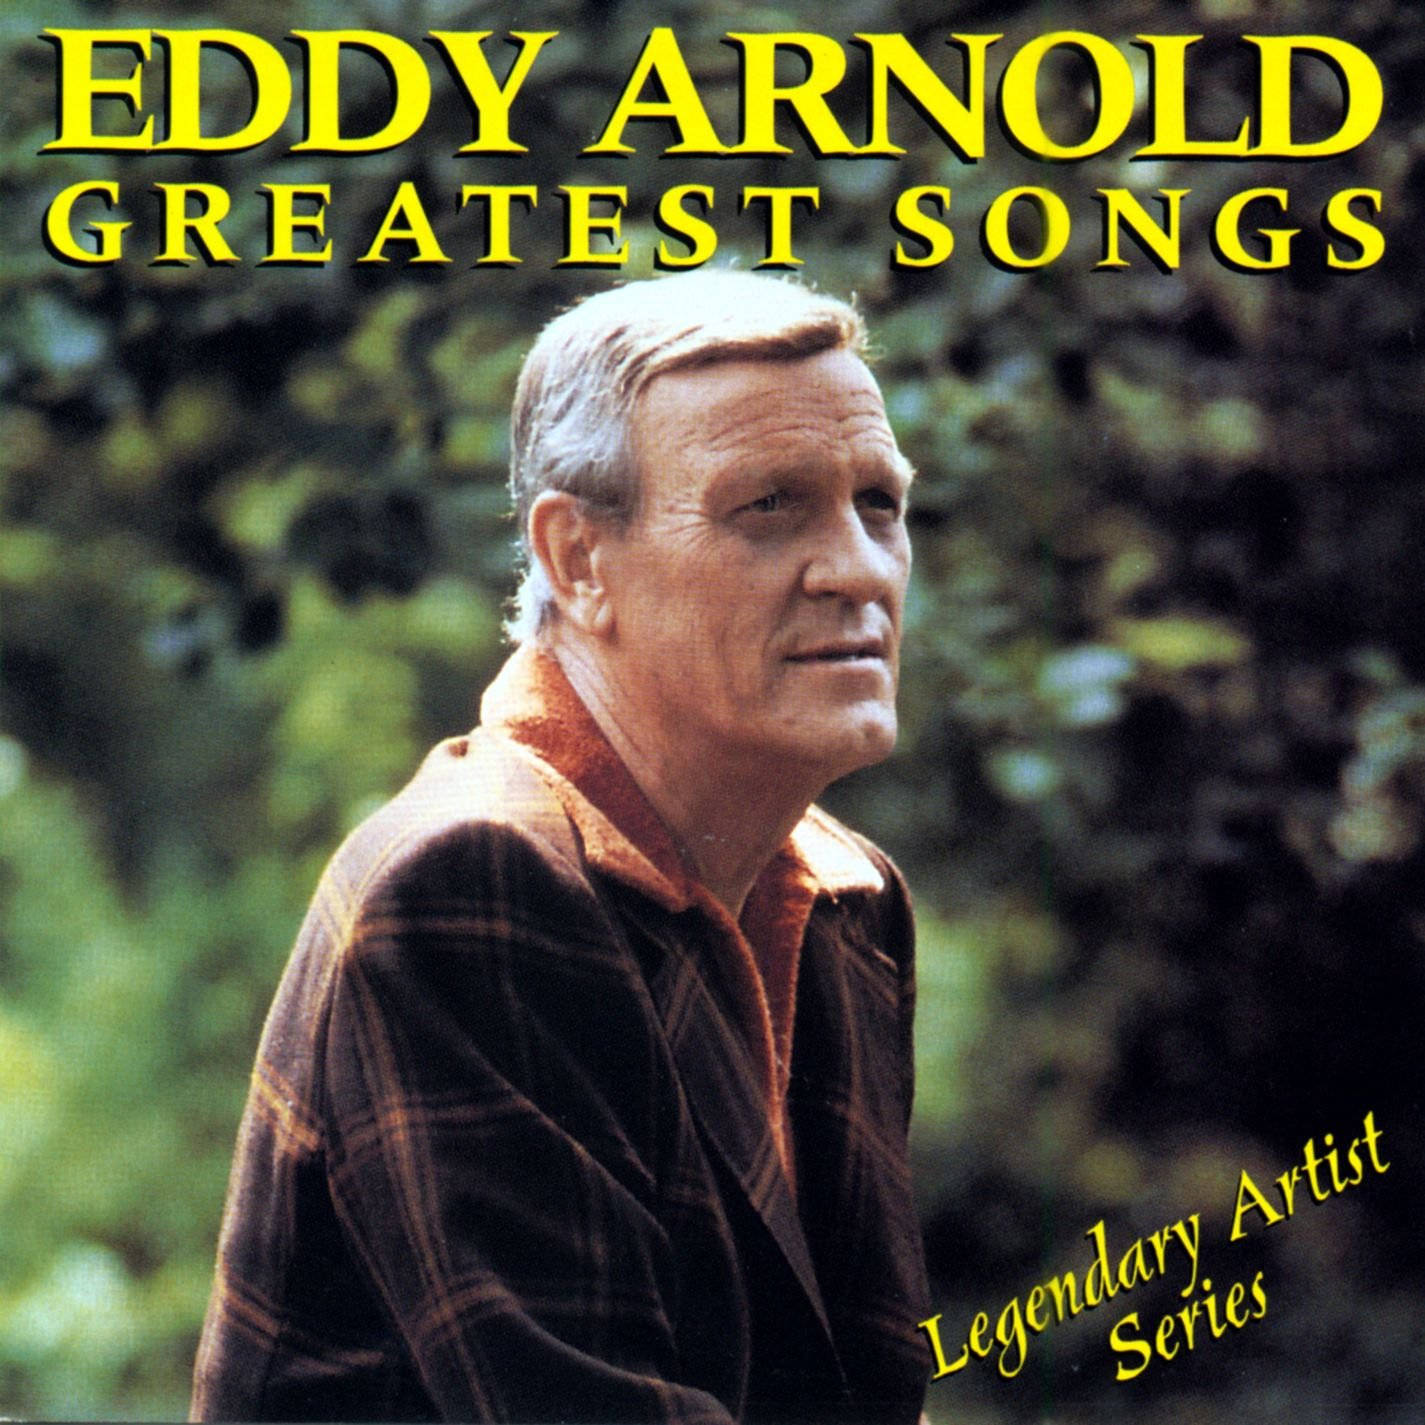 Portadadel Cd Eddy Arnold Greatest Songs 1995 Fondo de pantalla